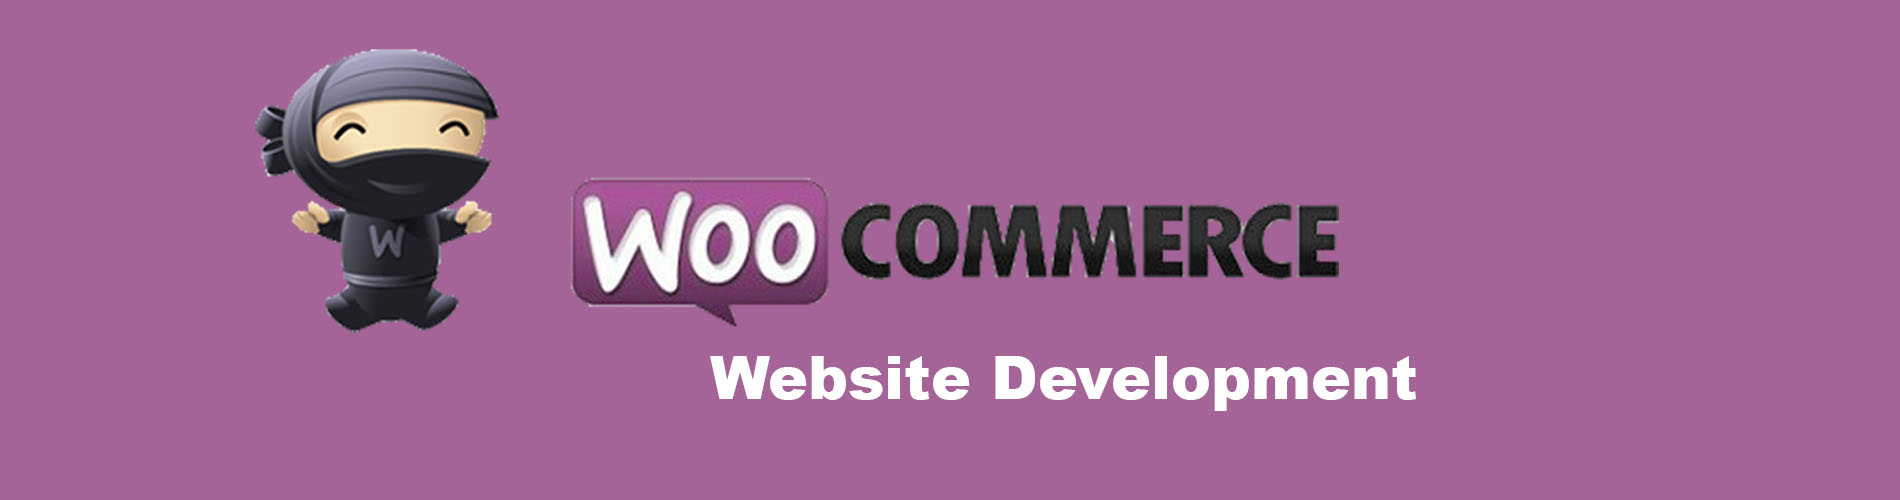 woo-commerce-website-development-company